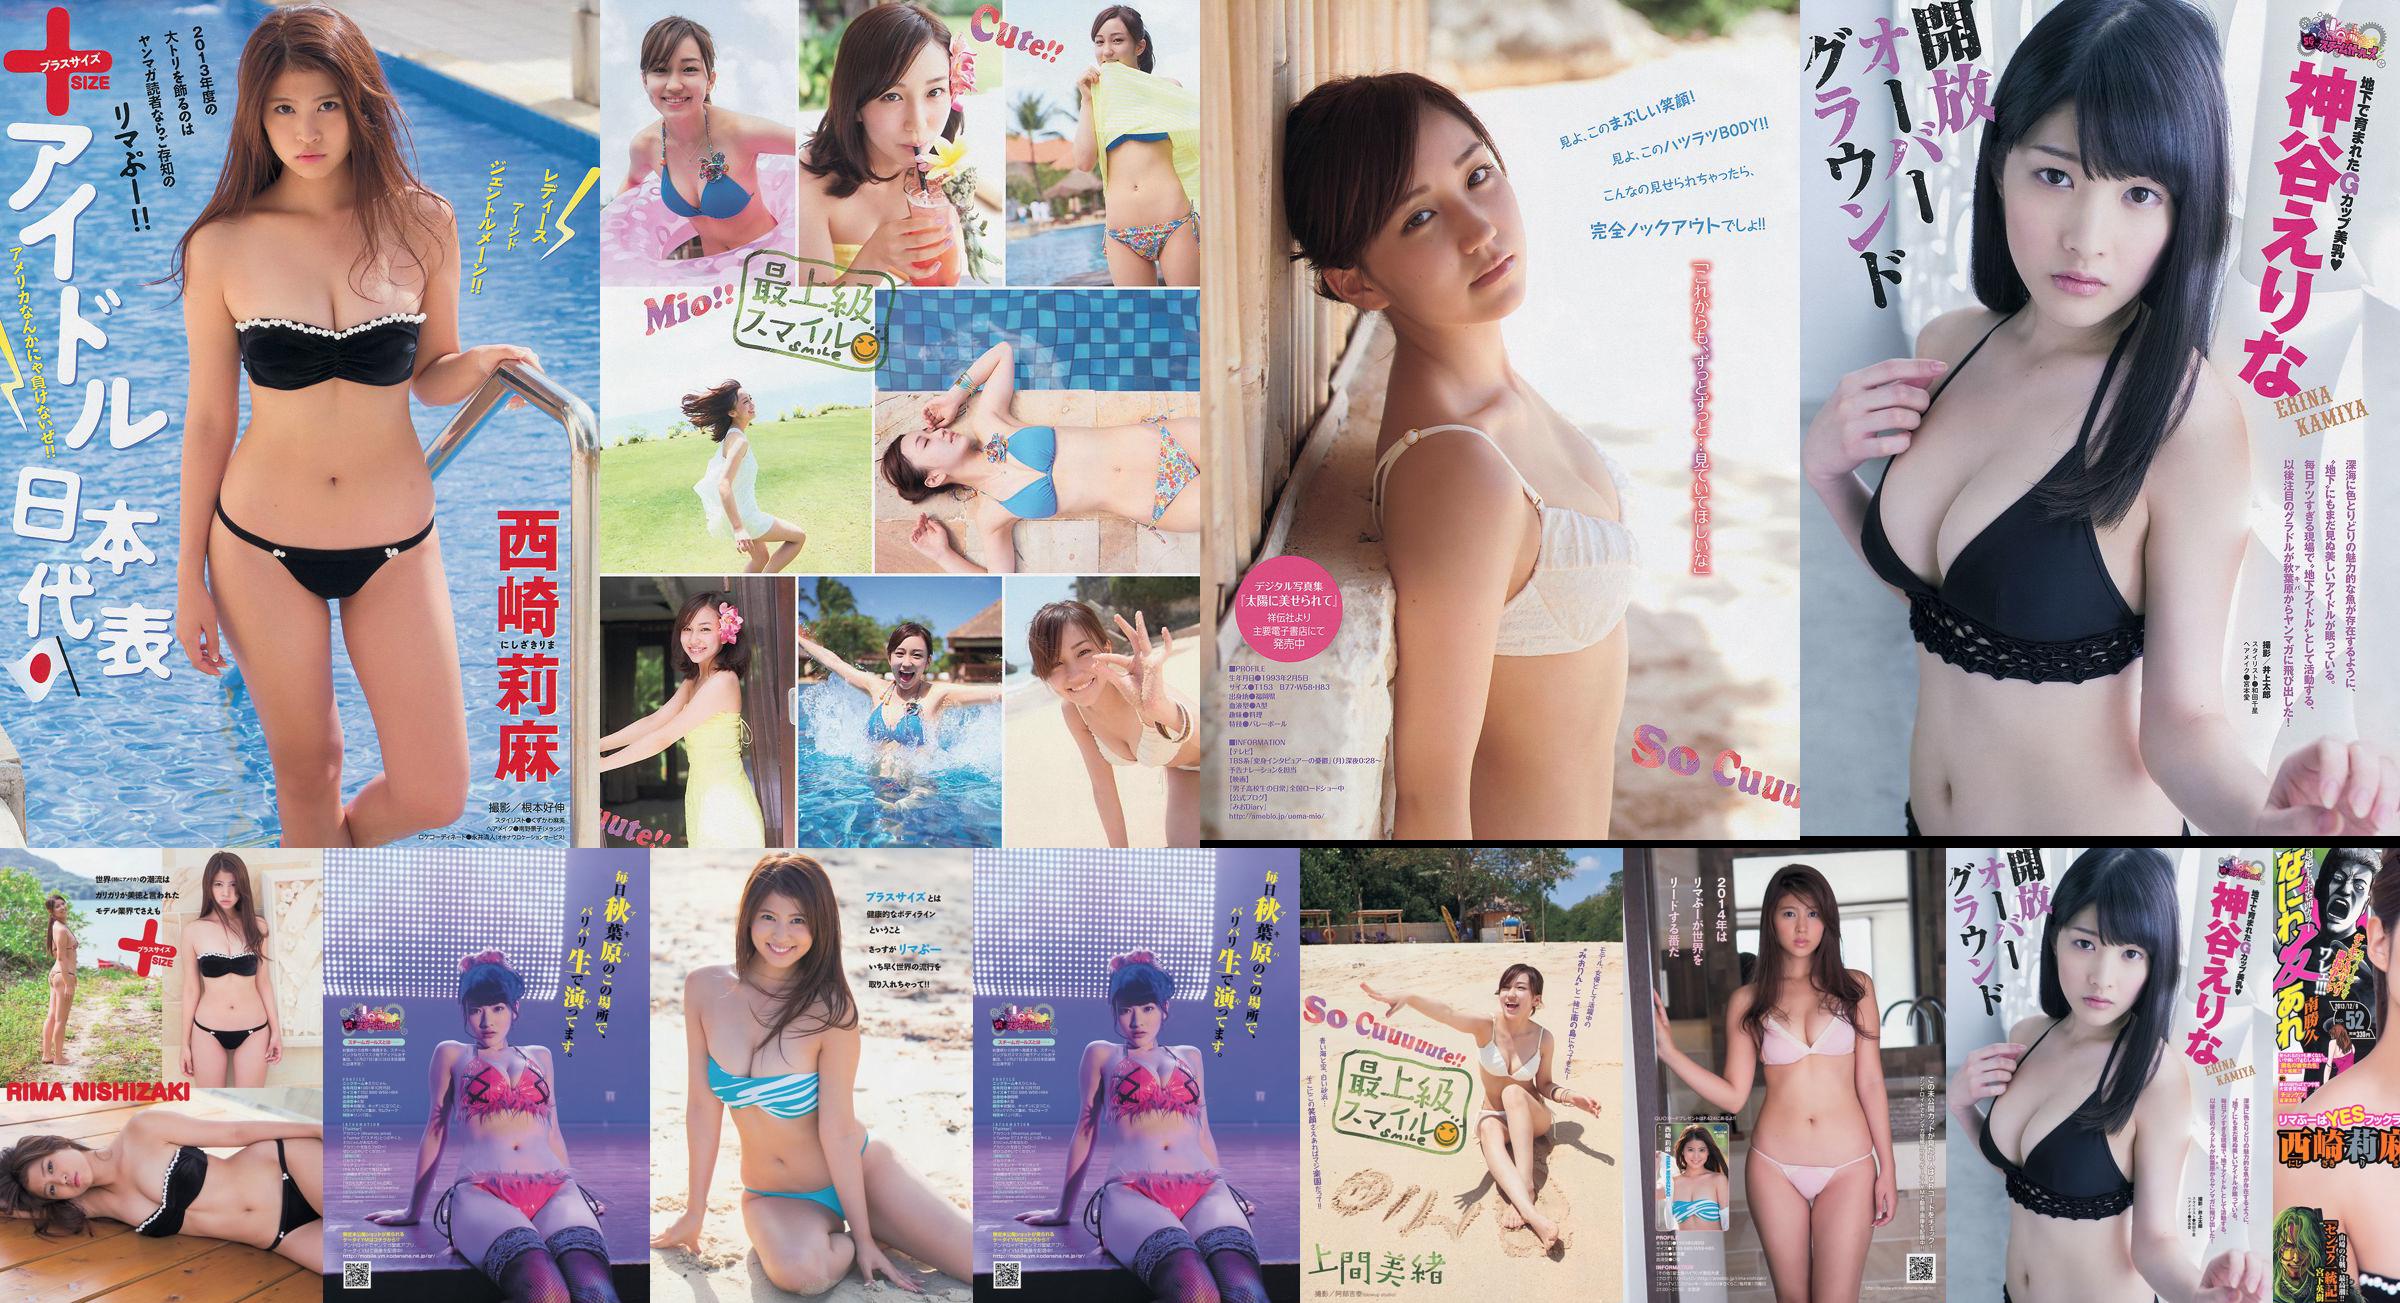 [Young Magazine] Rima Nishizaki Mio Uema Erina Kamiya 2013 No.52 Photo Moshi No.361291 Pagina 2